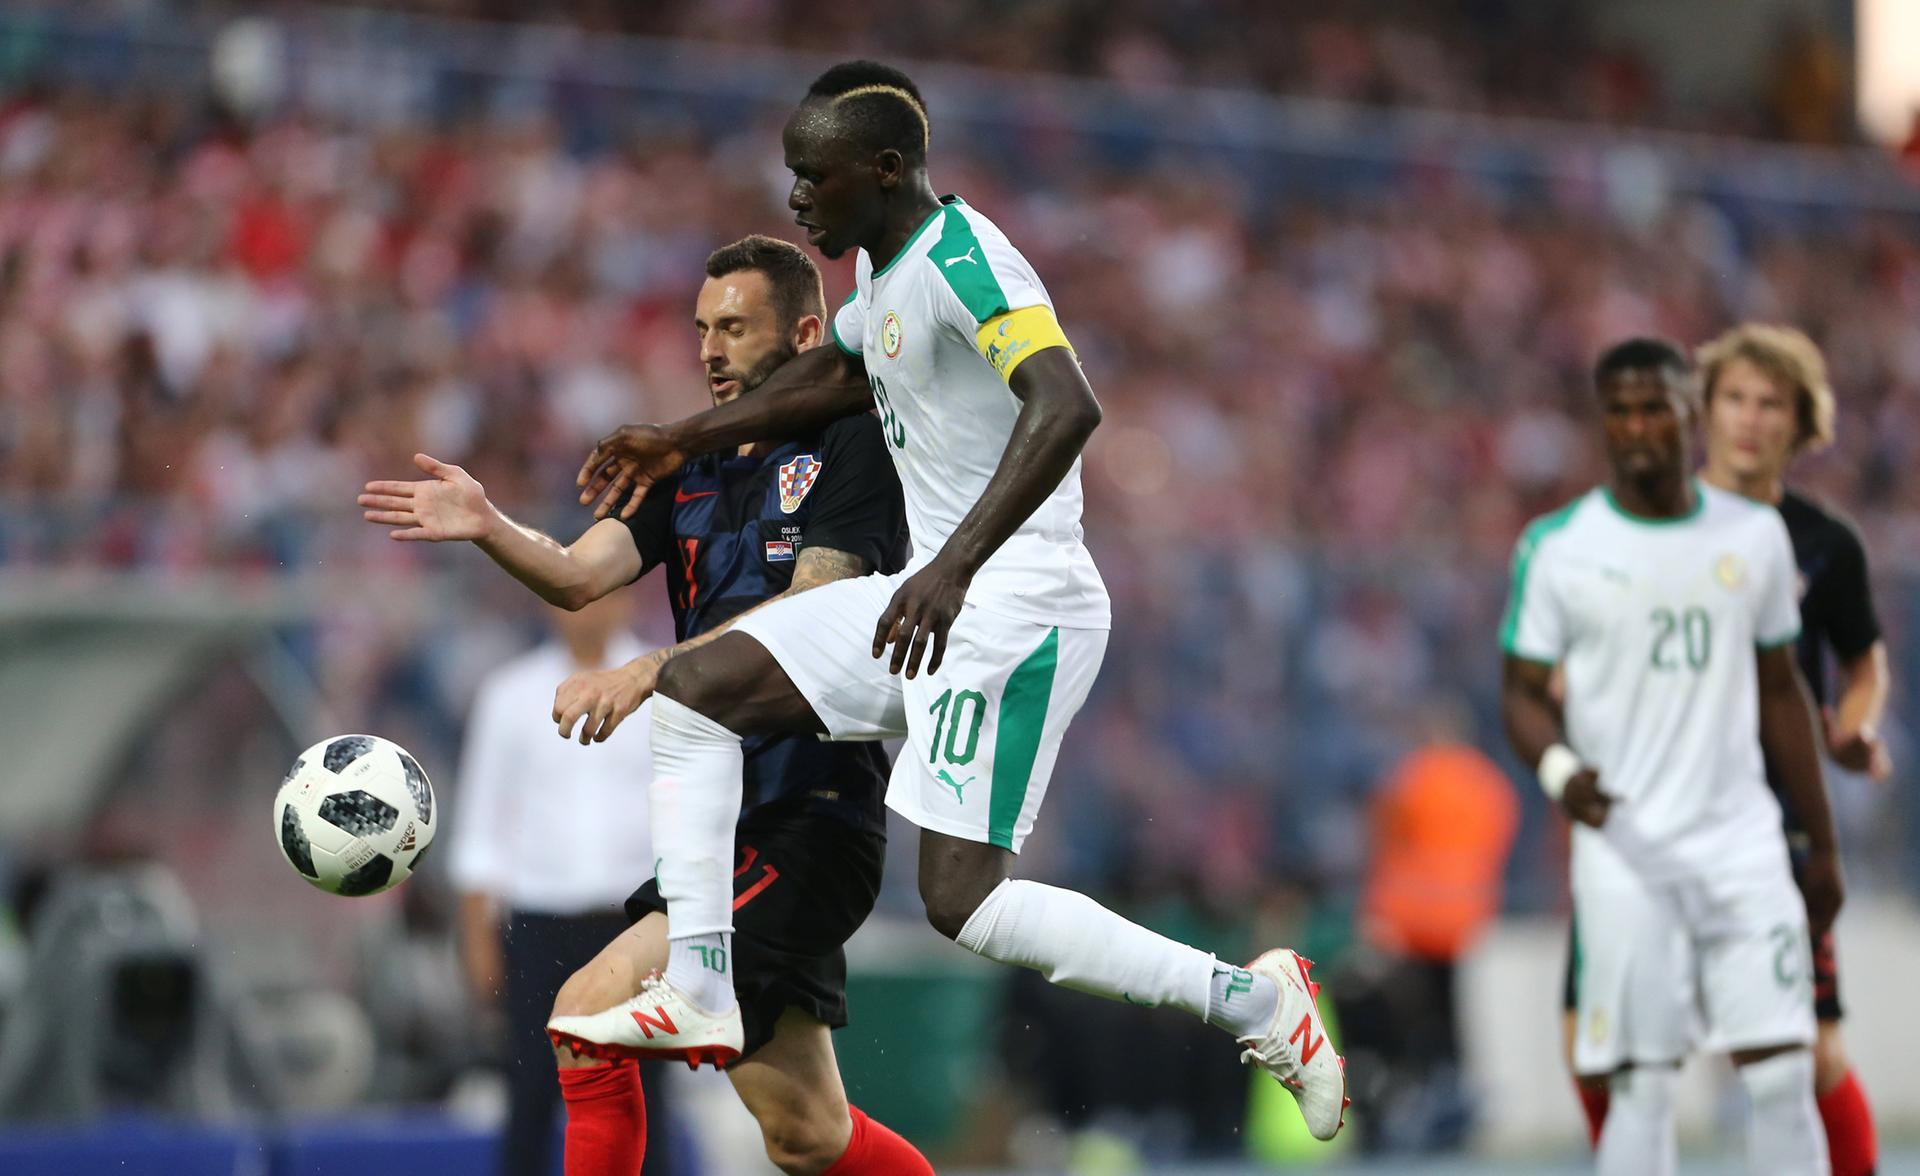 Big hope. Французский Сенегал. Poland vs Senegal 2018. Страны Бассари Сенегал.